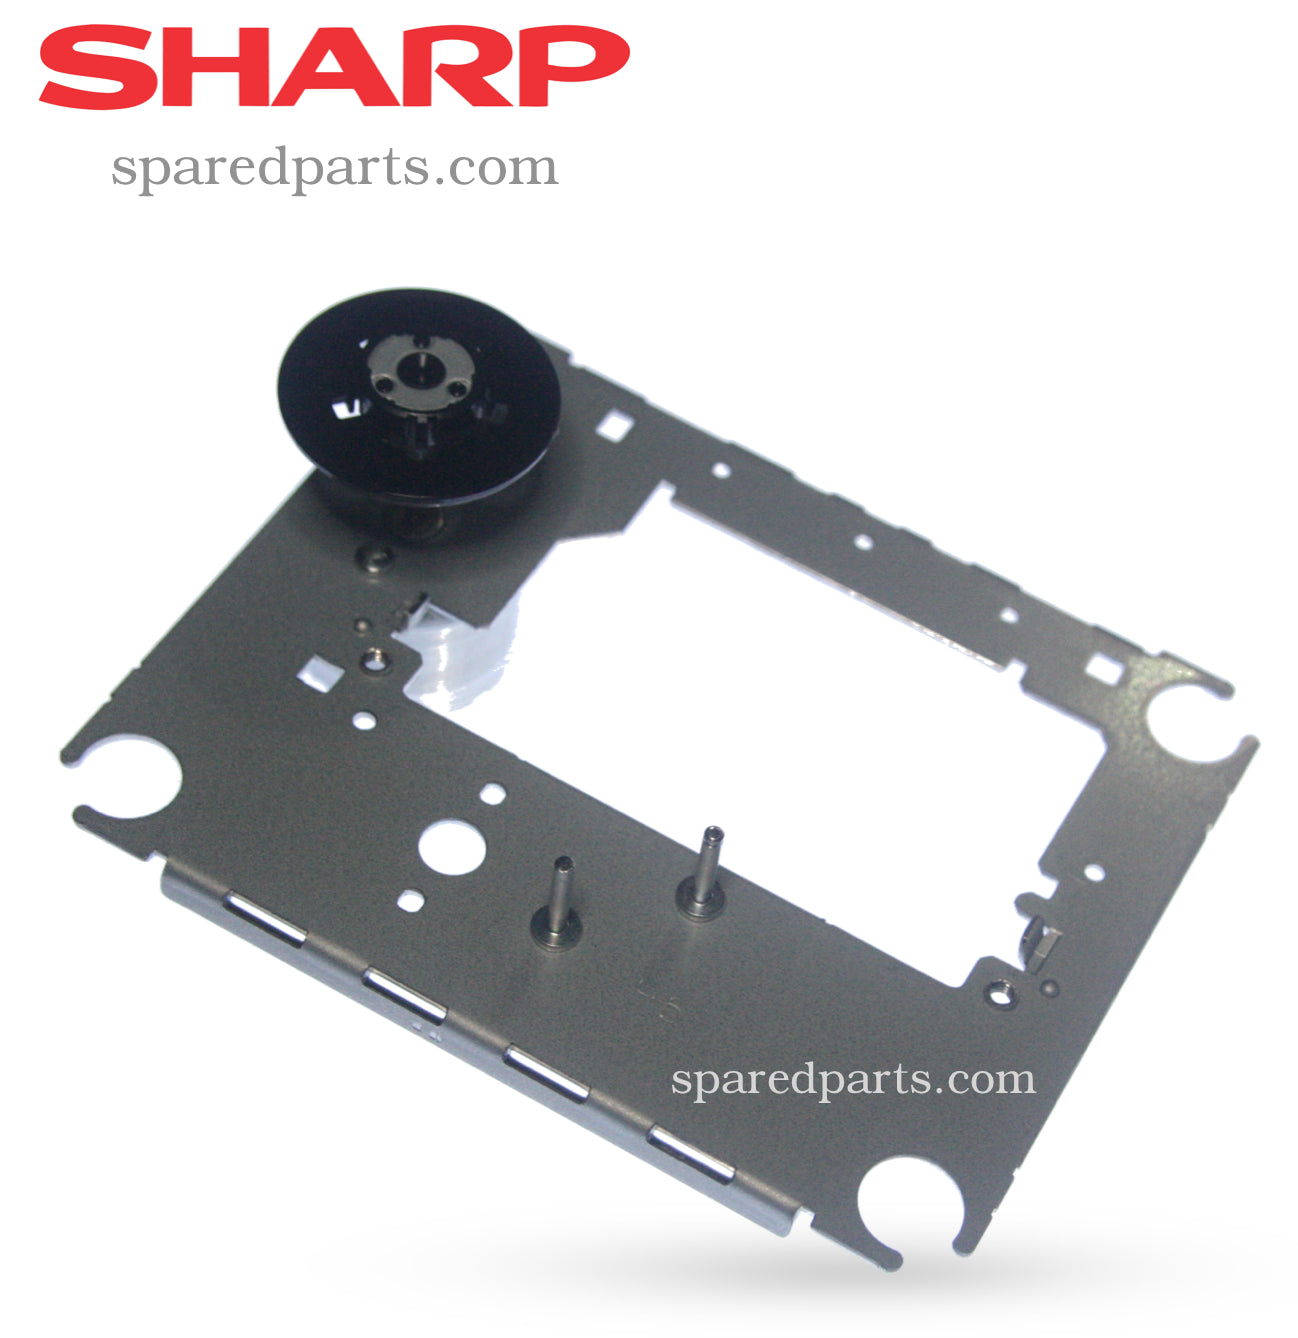 Sharp Spindle Motor. Manufacturer part number: 92LMTR5515CASY